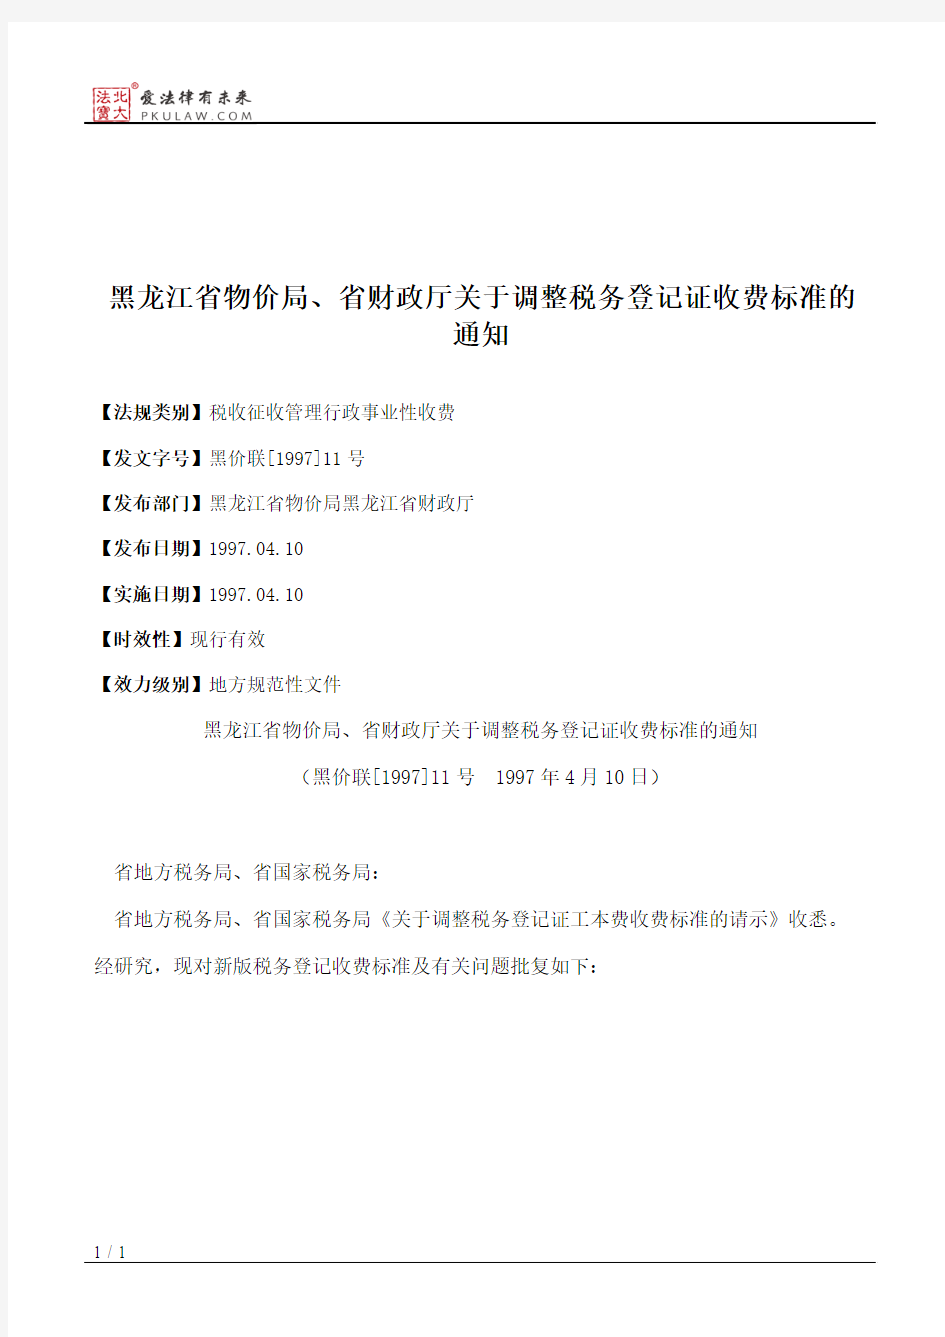 黑龙江省物价局、省财政厅关于调整税务登记证收费标准的通知